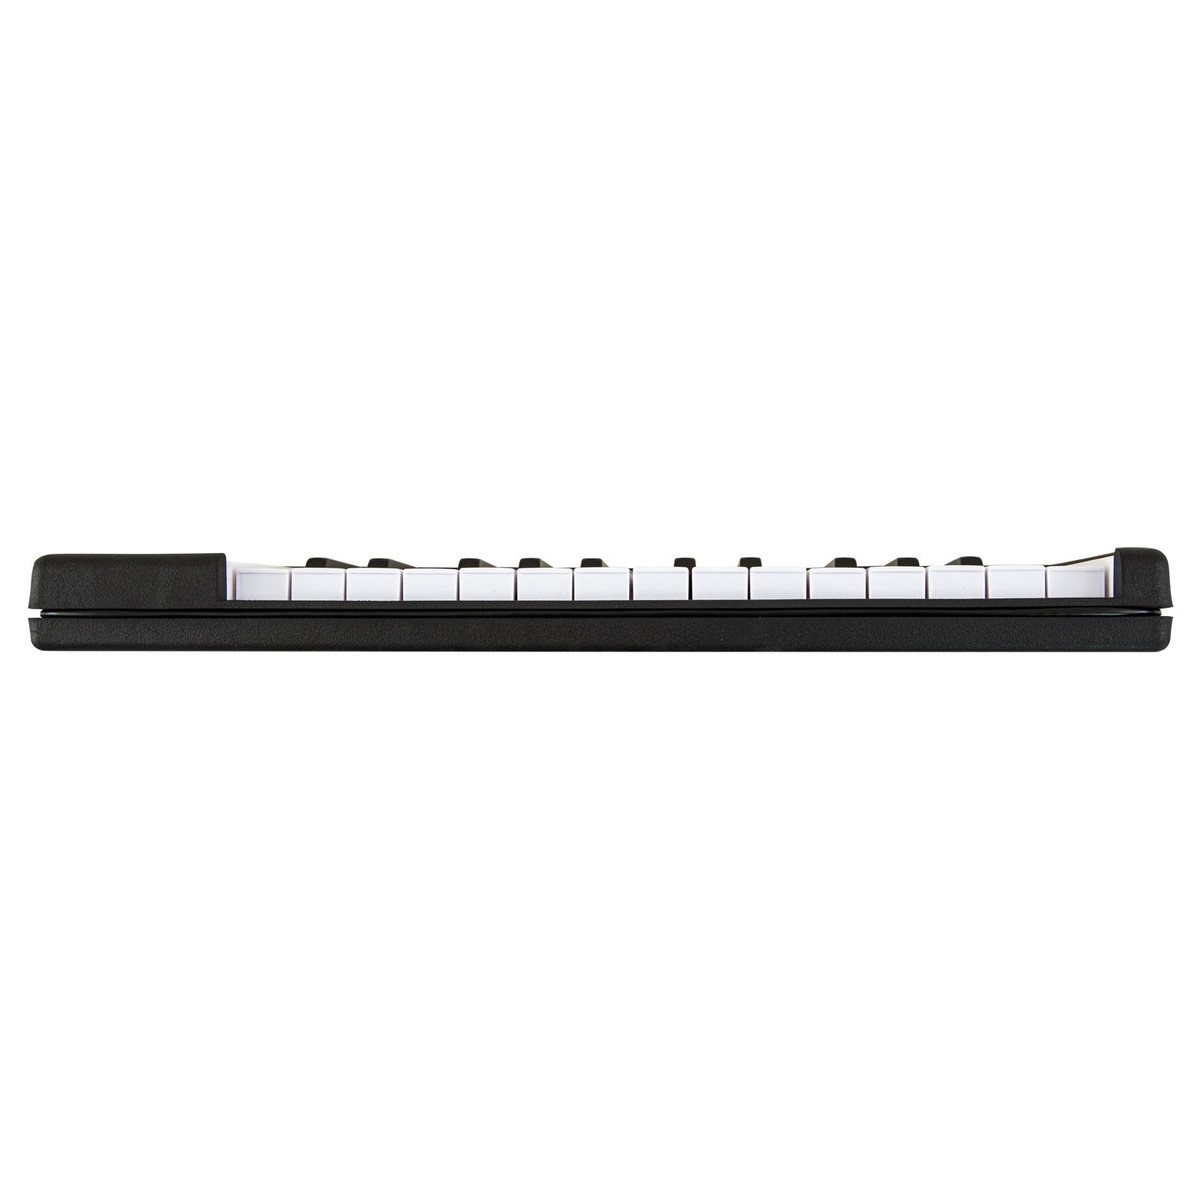 ARTURIA MICROLAB BLACK CONTROLLER TASTIERA 25 TASTI MINI MIDI – USB COLORE NERO 5